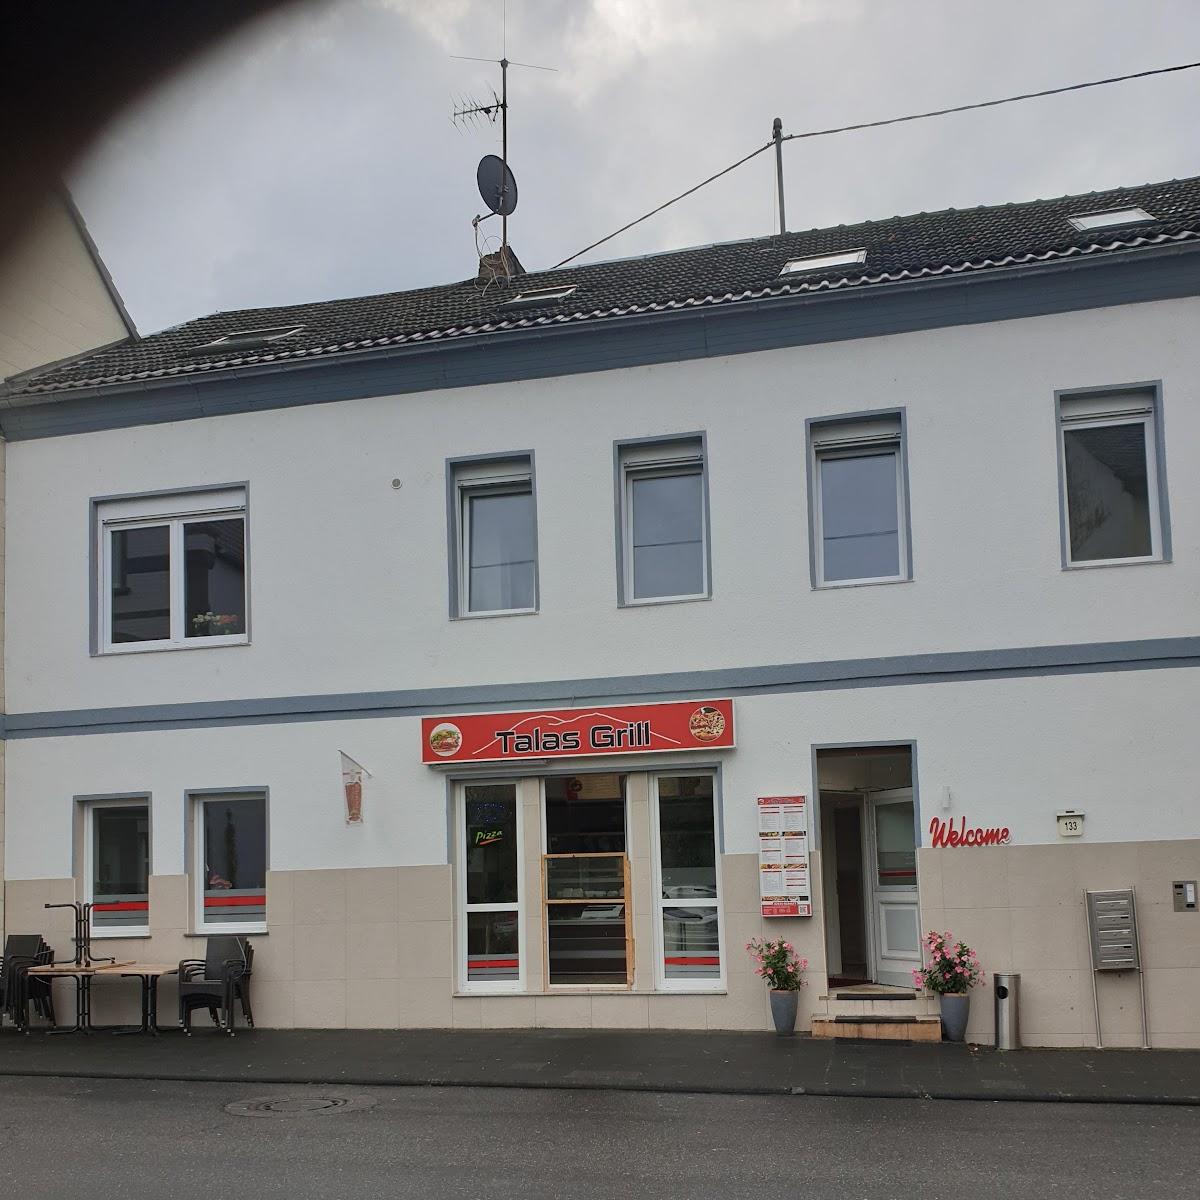 Restaurant "Talas Grill - Lieferung&Abholung -" in Bad Hönningen